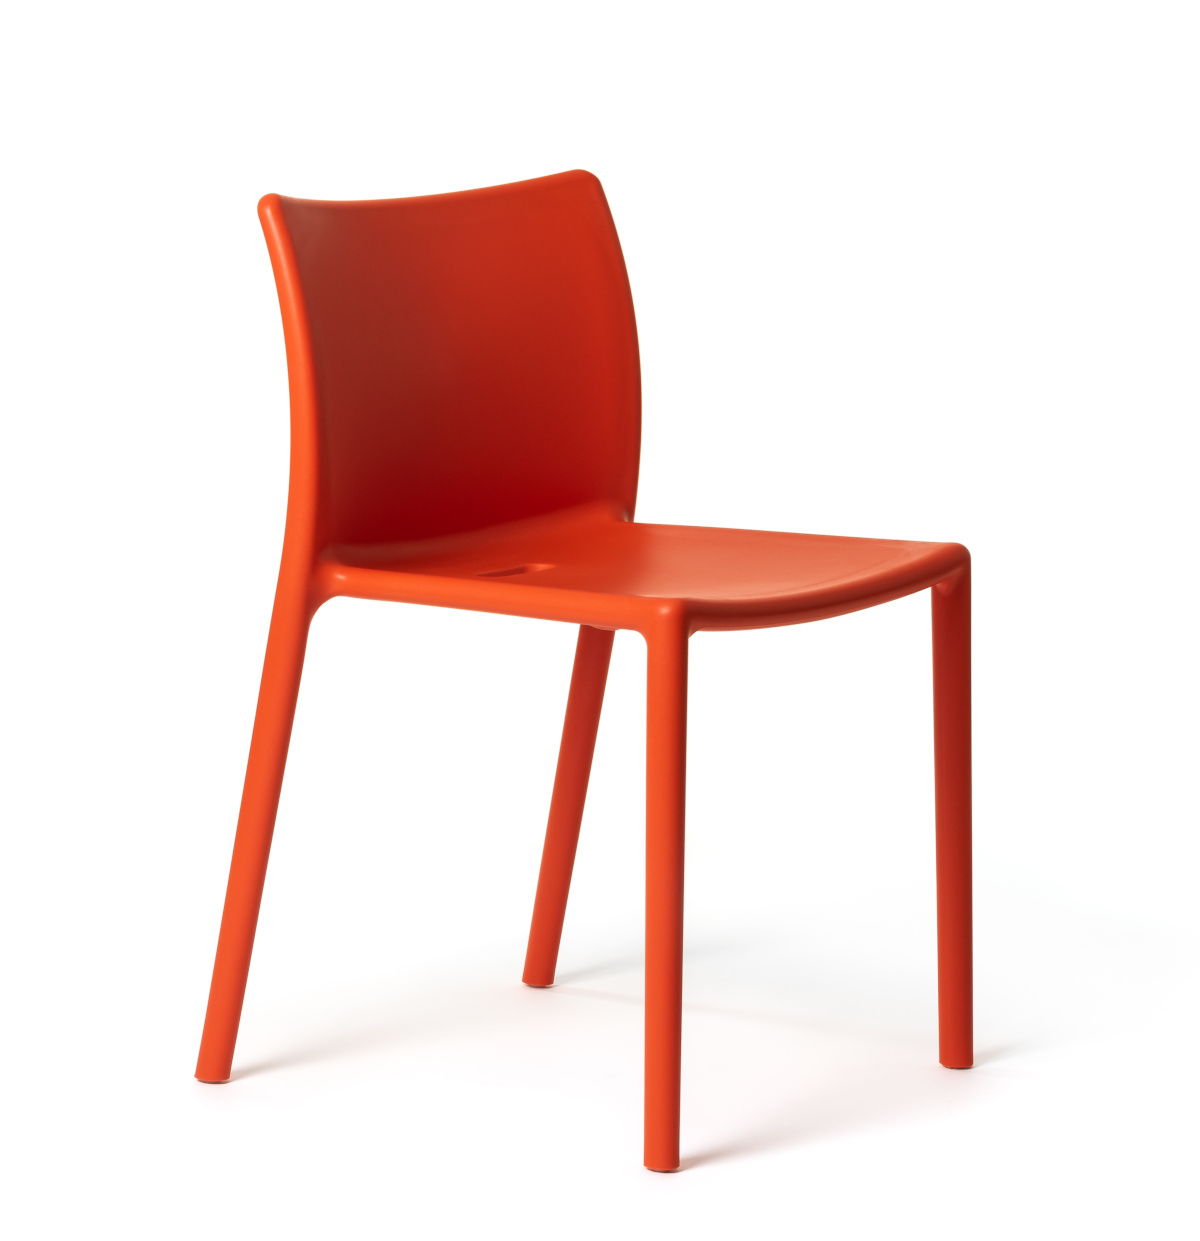 Air-Chair, orange